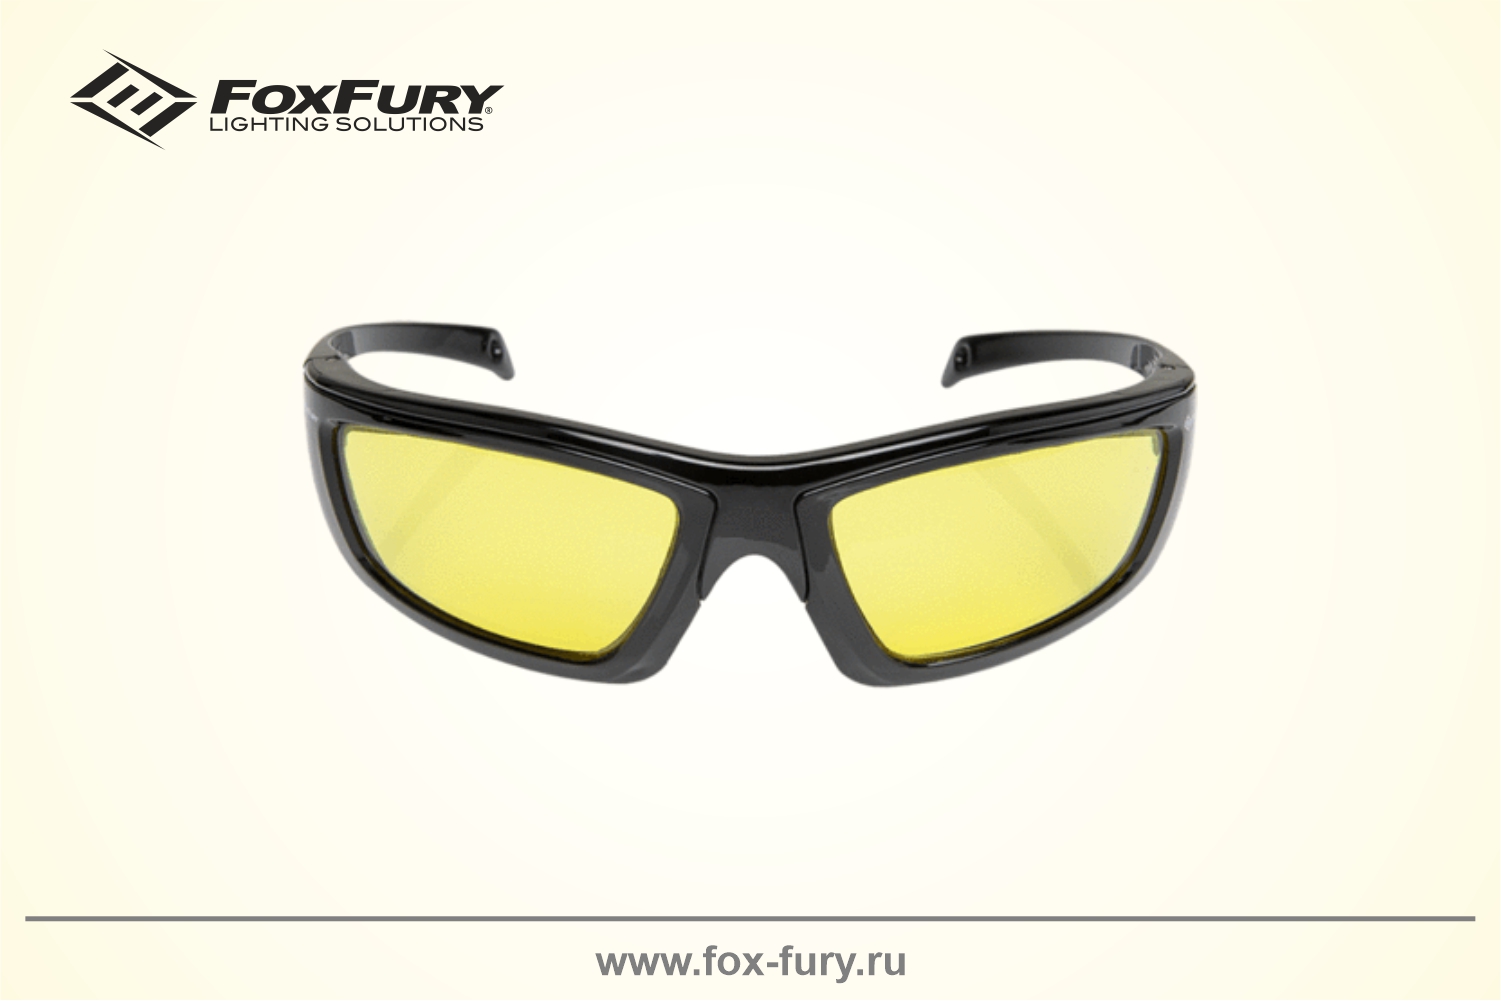 Очки для криминалистики FoxFury CS EYE желтые 600-1120